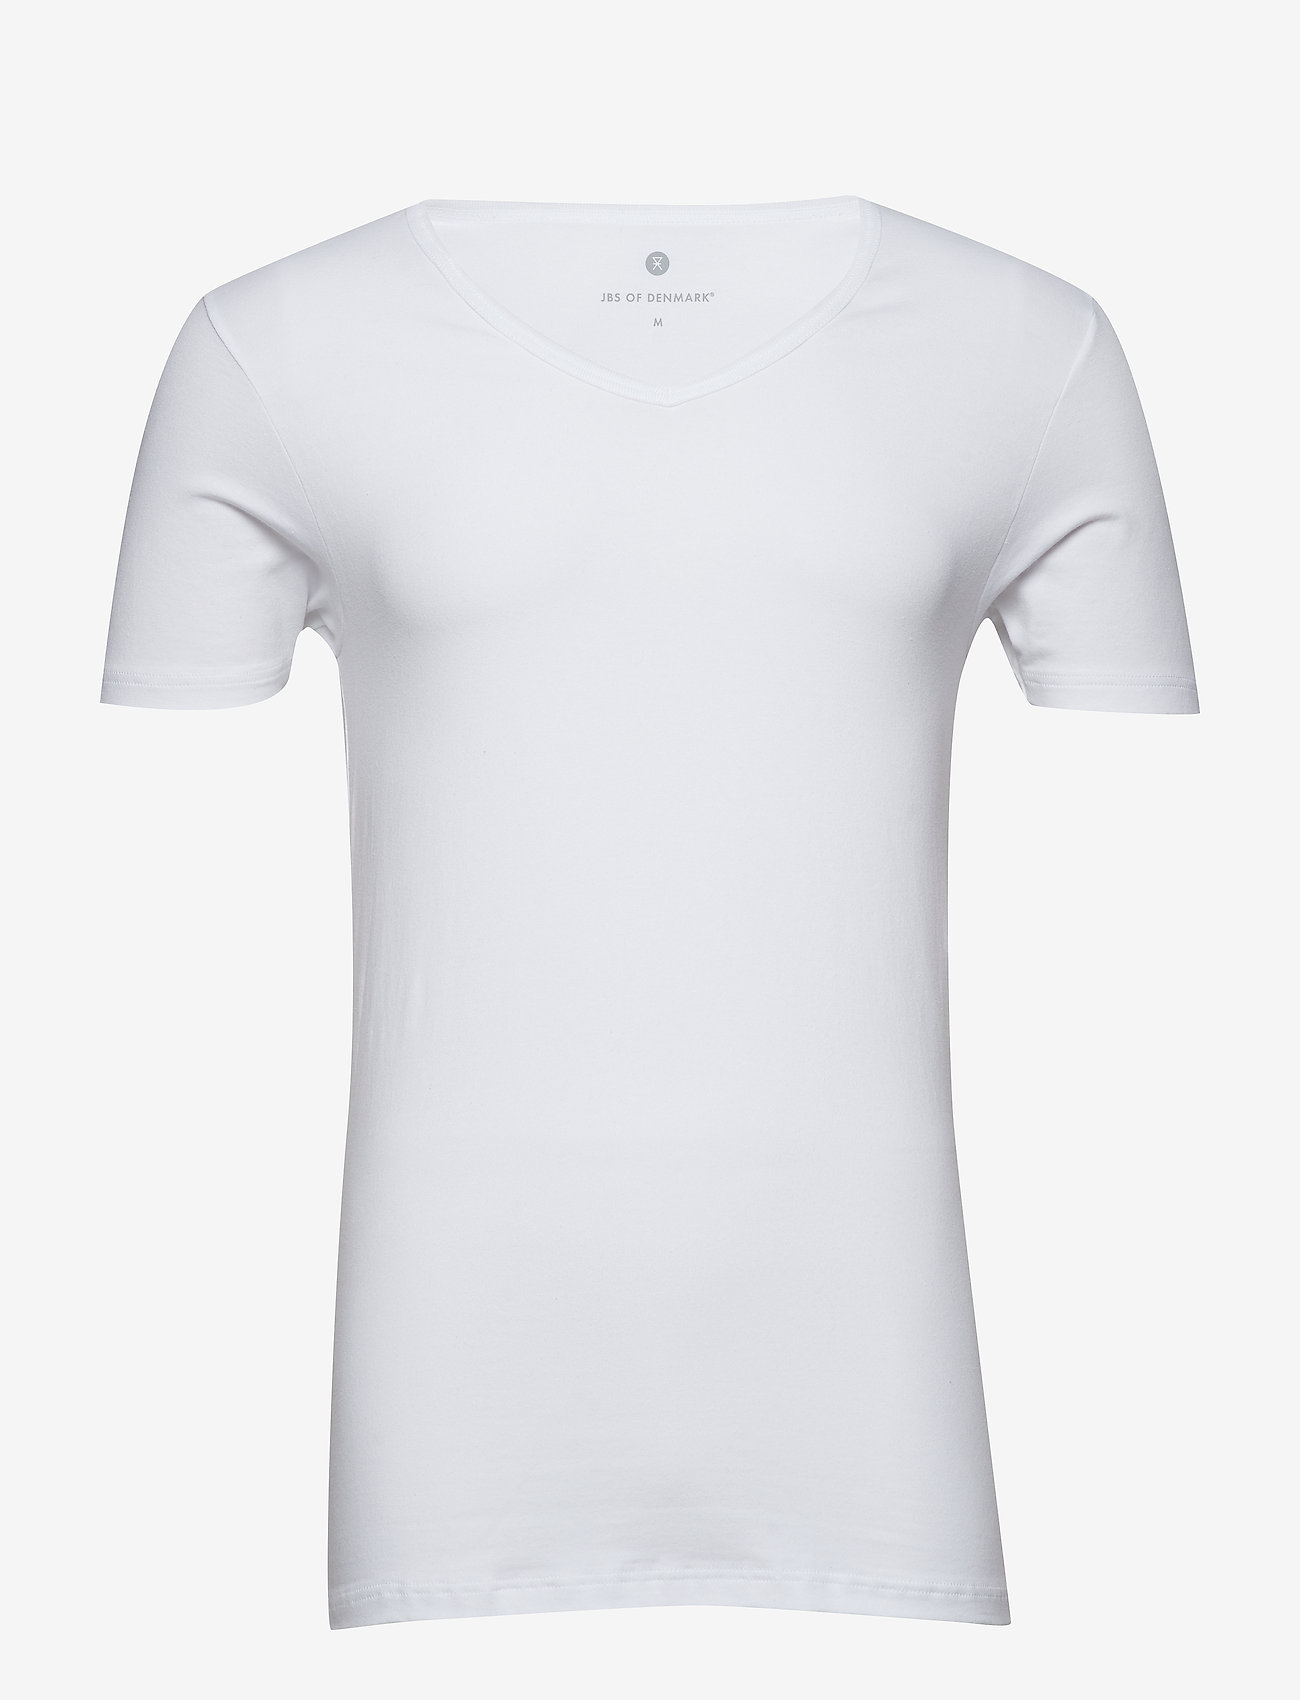 JBS of Denmark - JBS of DK t-shirt V-neck - lowest prices - white - 0